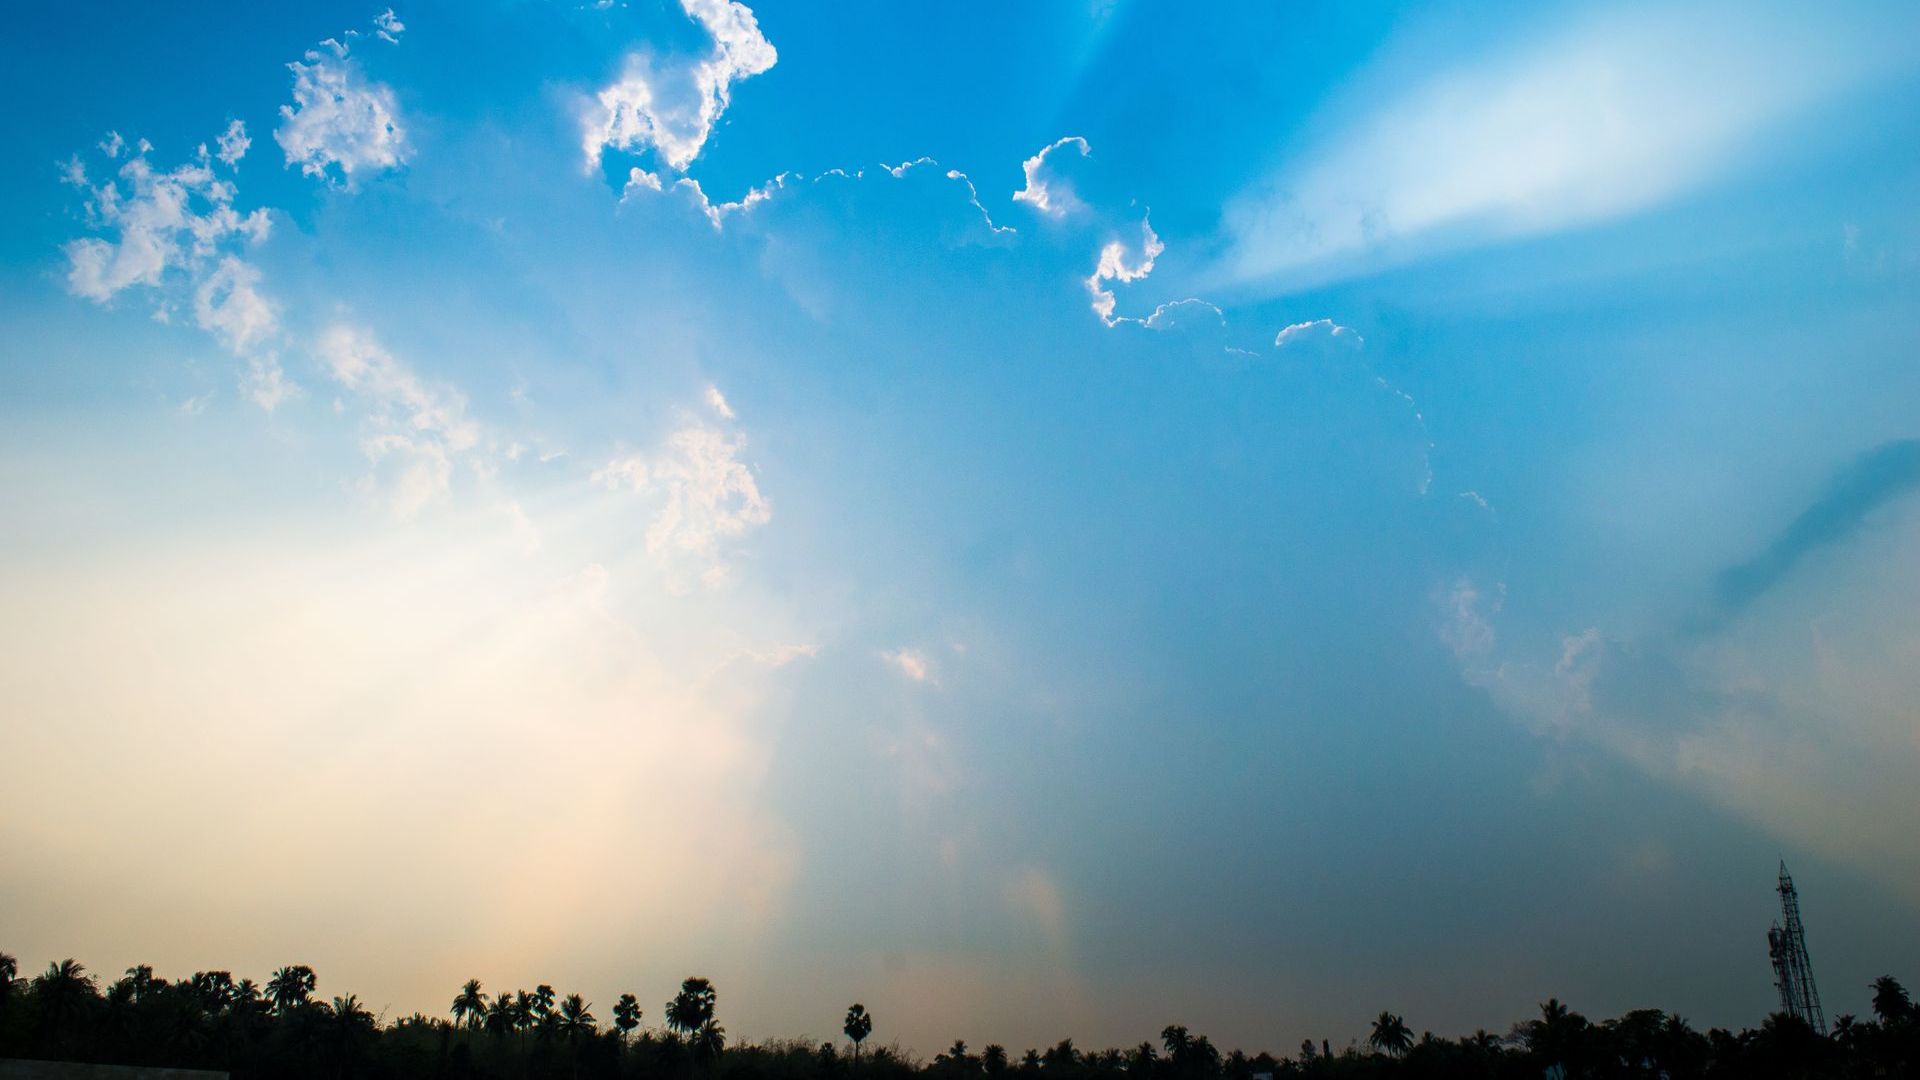 Praxis für Energietherapie Hintergrundbild. Zu sehen sind helle Wolken mit Sonnenstrahlen, die hindurchleuchten. Das Bild soll eine entspannte Atmosphäre schaffen und die Webseiten Besucher willkommen heißen.